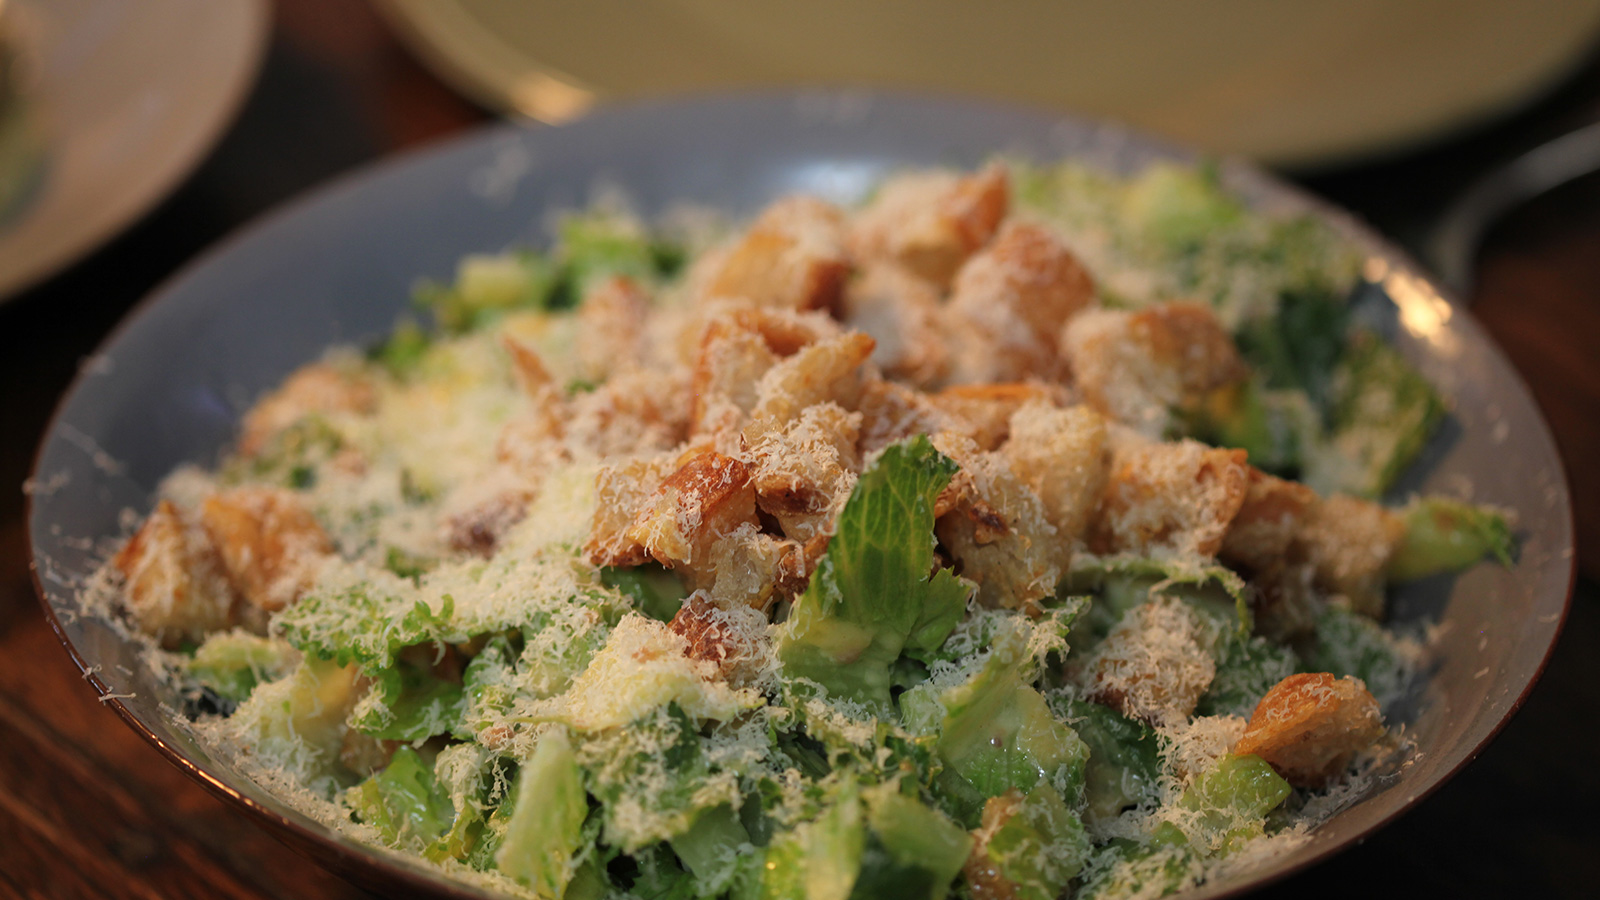 Ensalada césar crujiente (Big Caesar salad) - Gordon Ramsay - Receta -  Canal Cocina